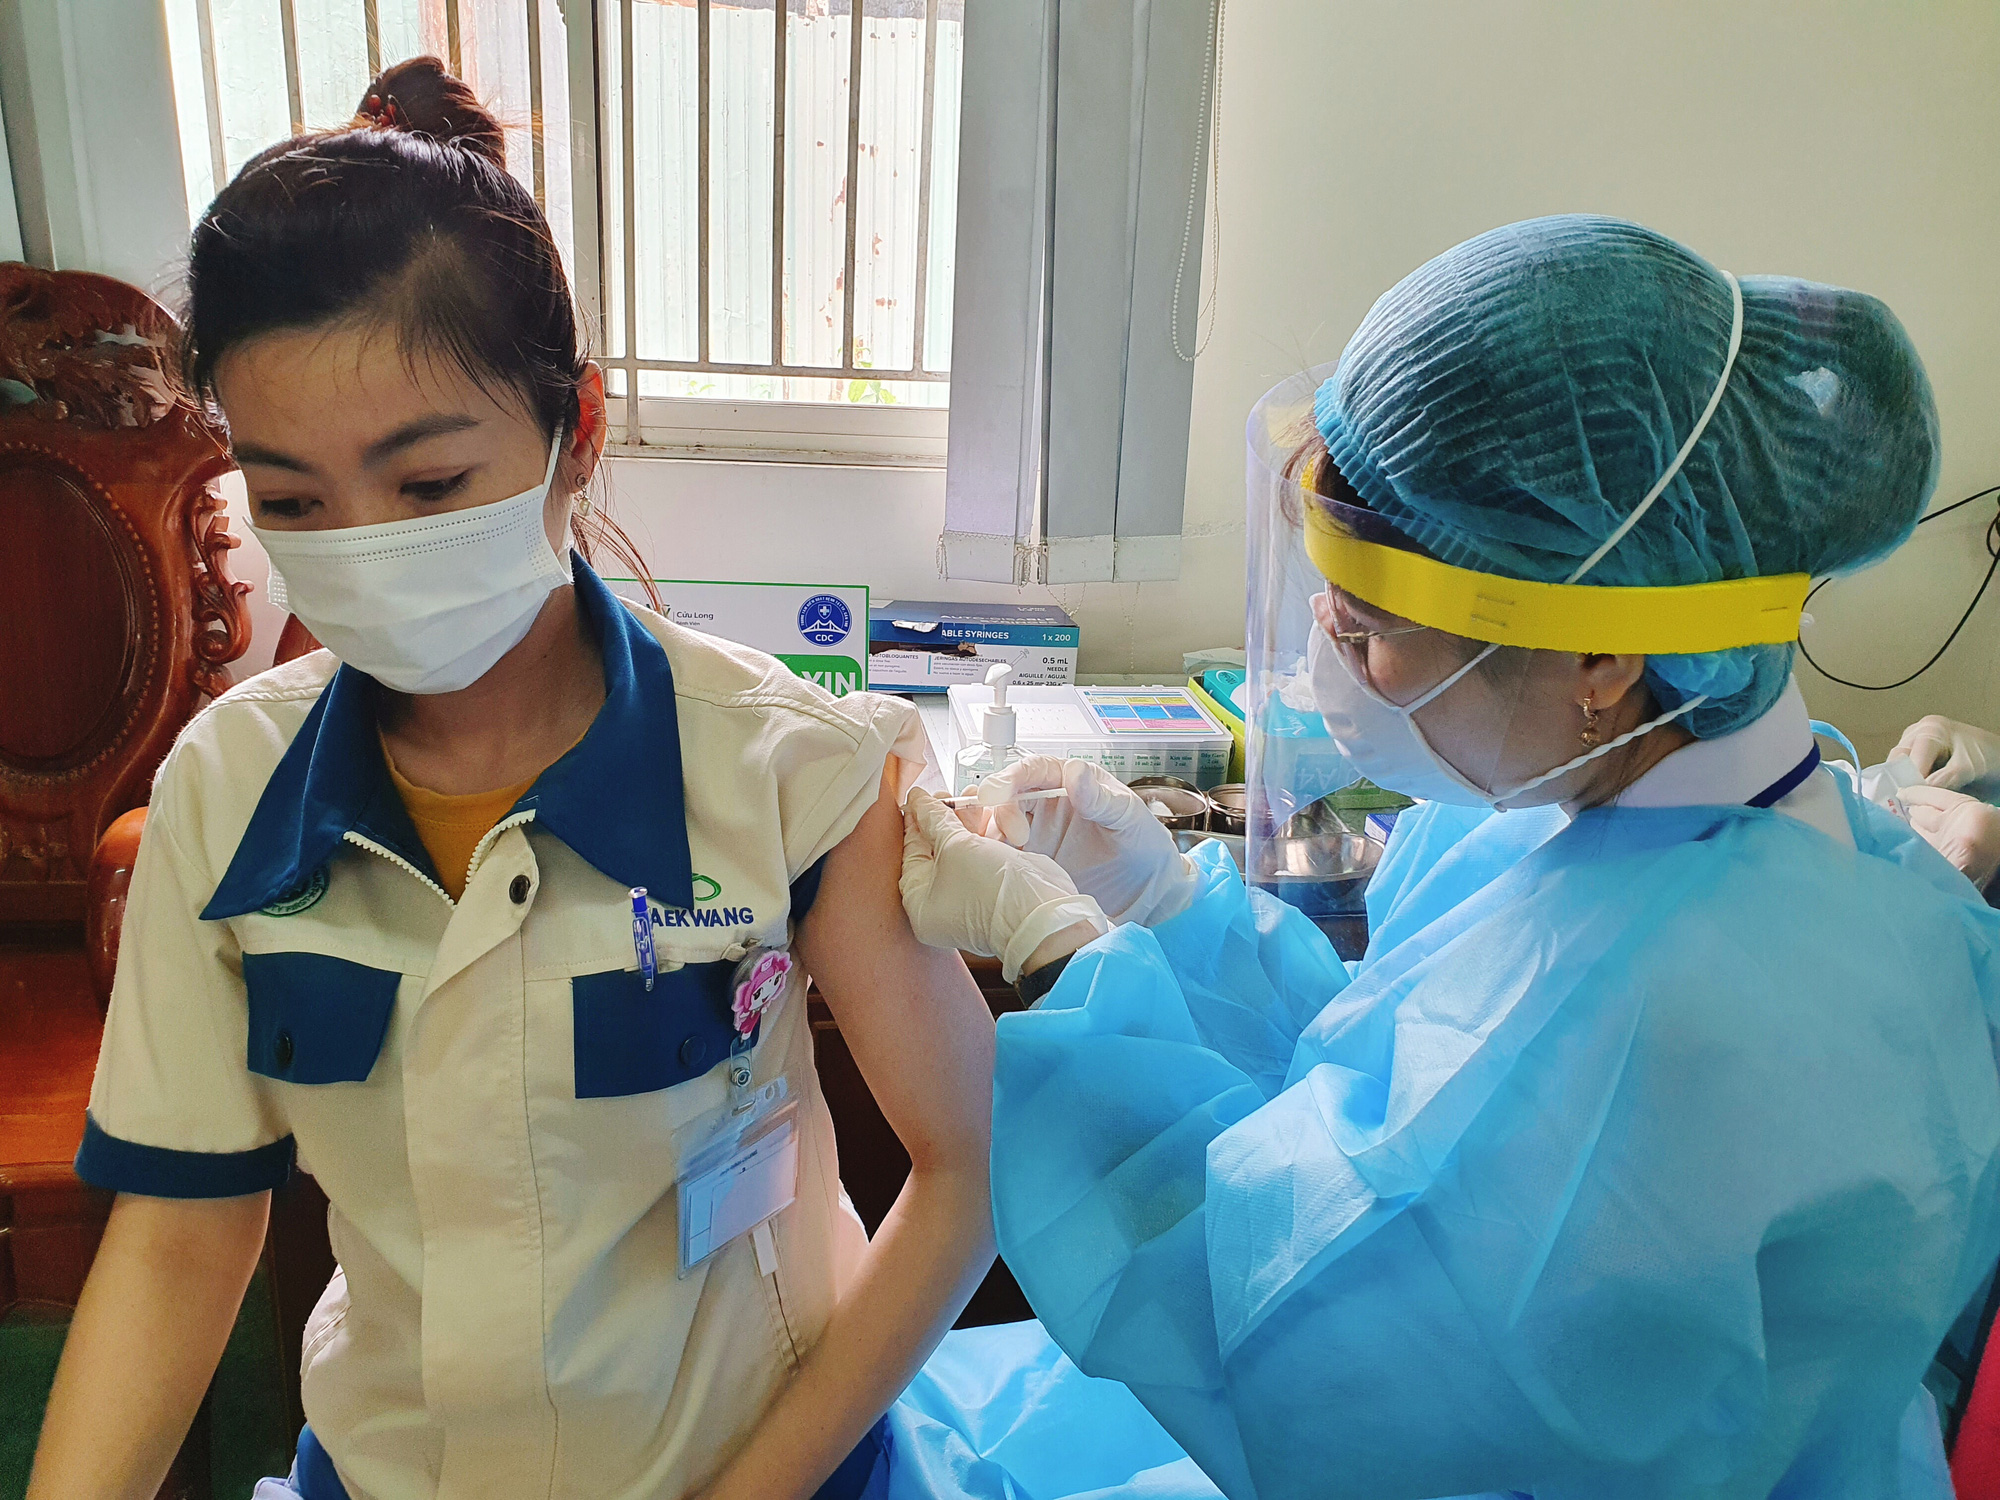 Chùm ảnh: Một bệnh viện ở Cần Thơ bắt đầu tiêm vắc-xin cho 1.800 công nhân - Ảnh 13.